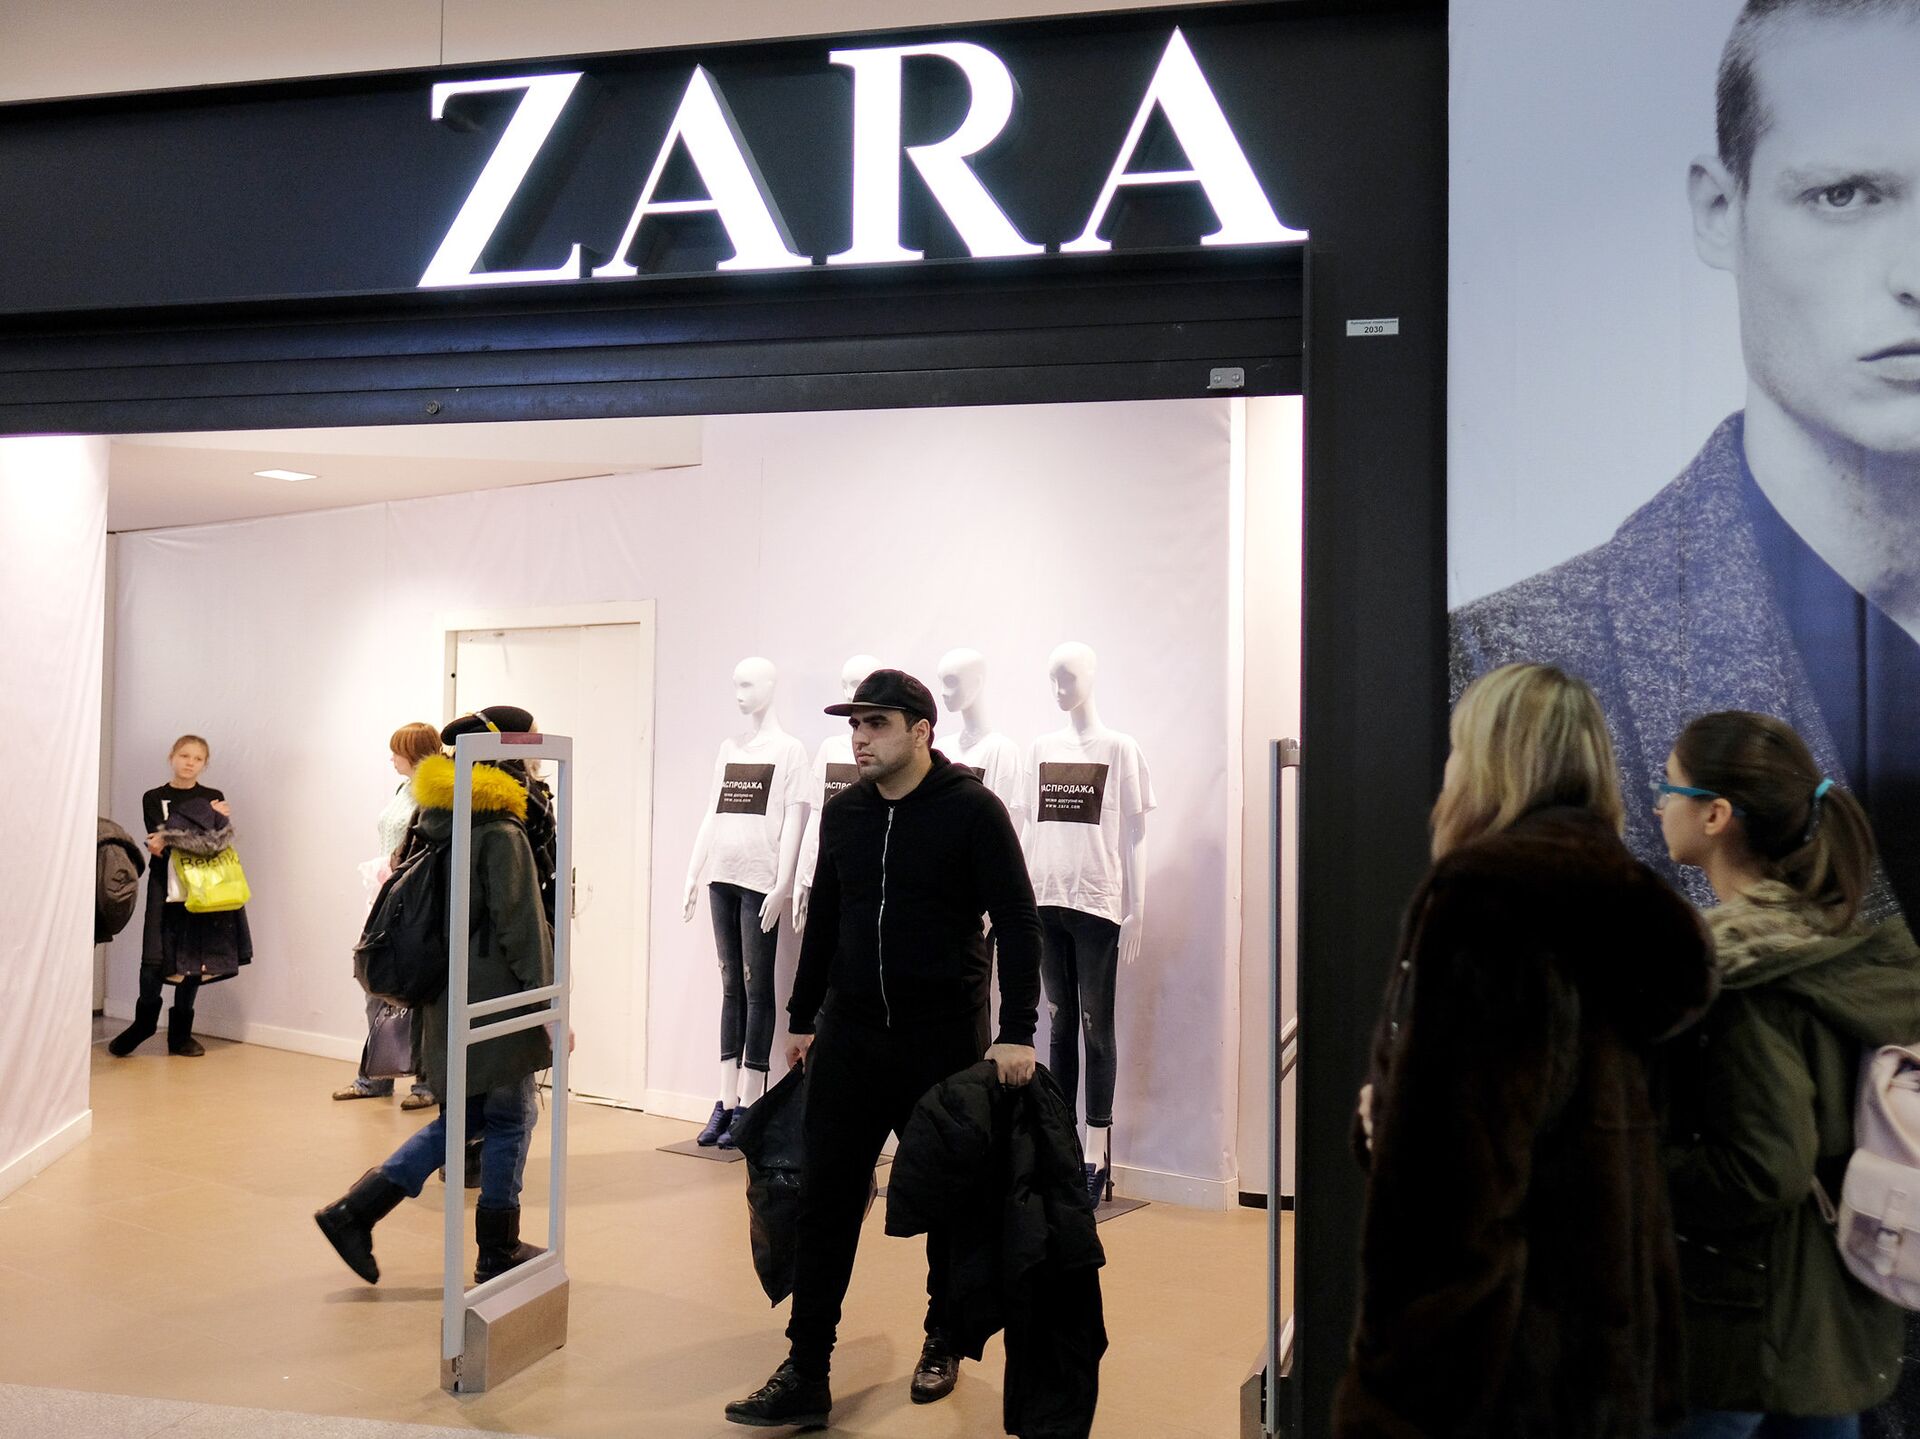 Магазины Zara Home В Москве Адреса Показать